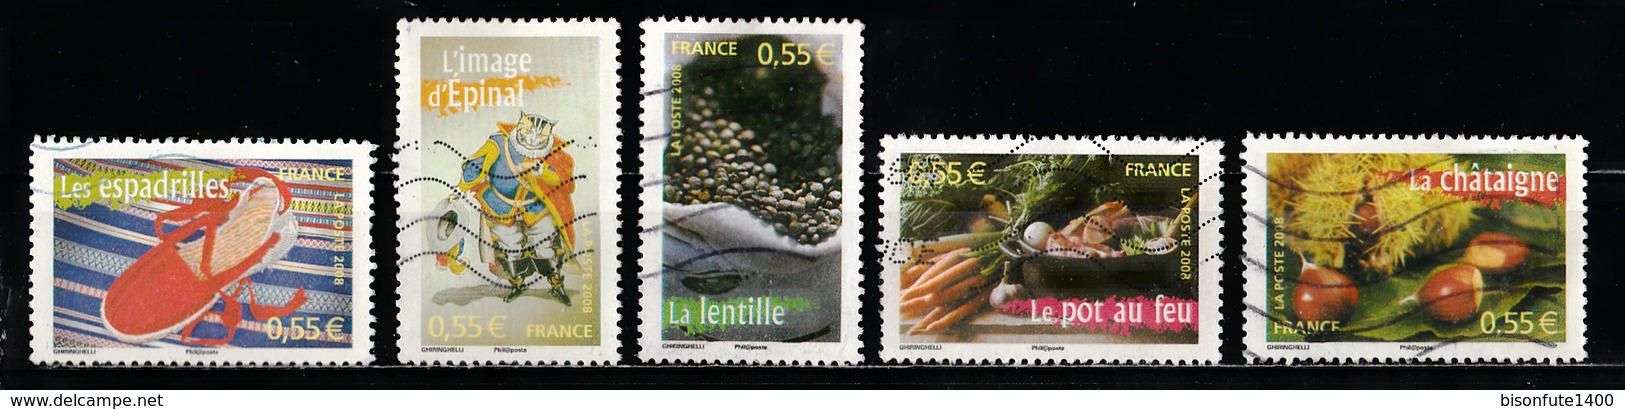 France 2008 : Timbres Yvert & Tellier N° 4260 - 4261 - 4262 - 4263 - 4265 - 4267 - 4268 Et 4269 Avec Oblitérations Méc. - Oblitérés